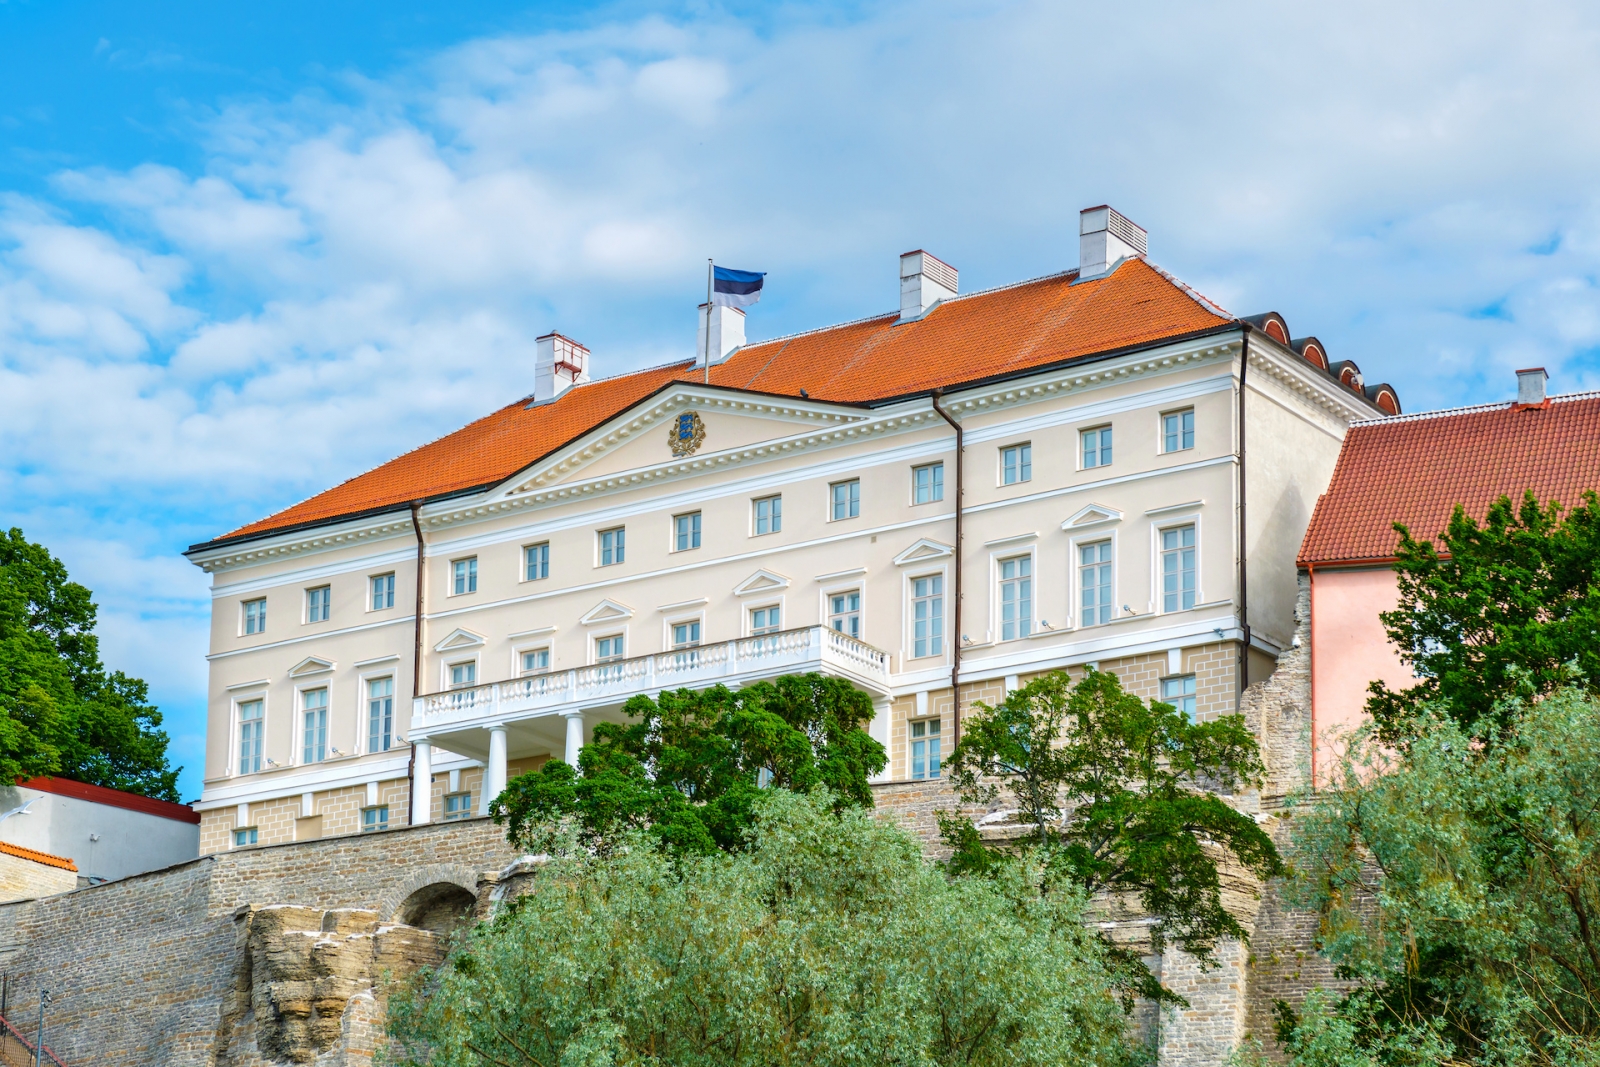 Estnisches Regierungsgebäude.  Tallinn, Estland